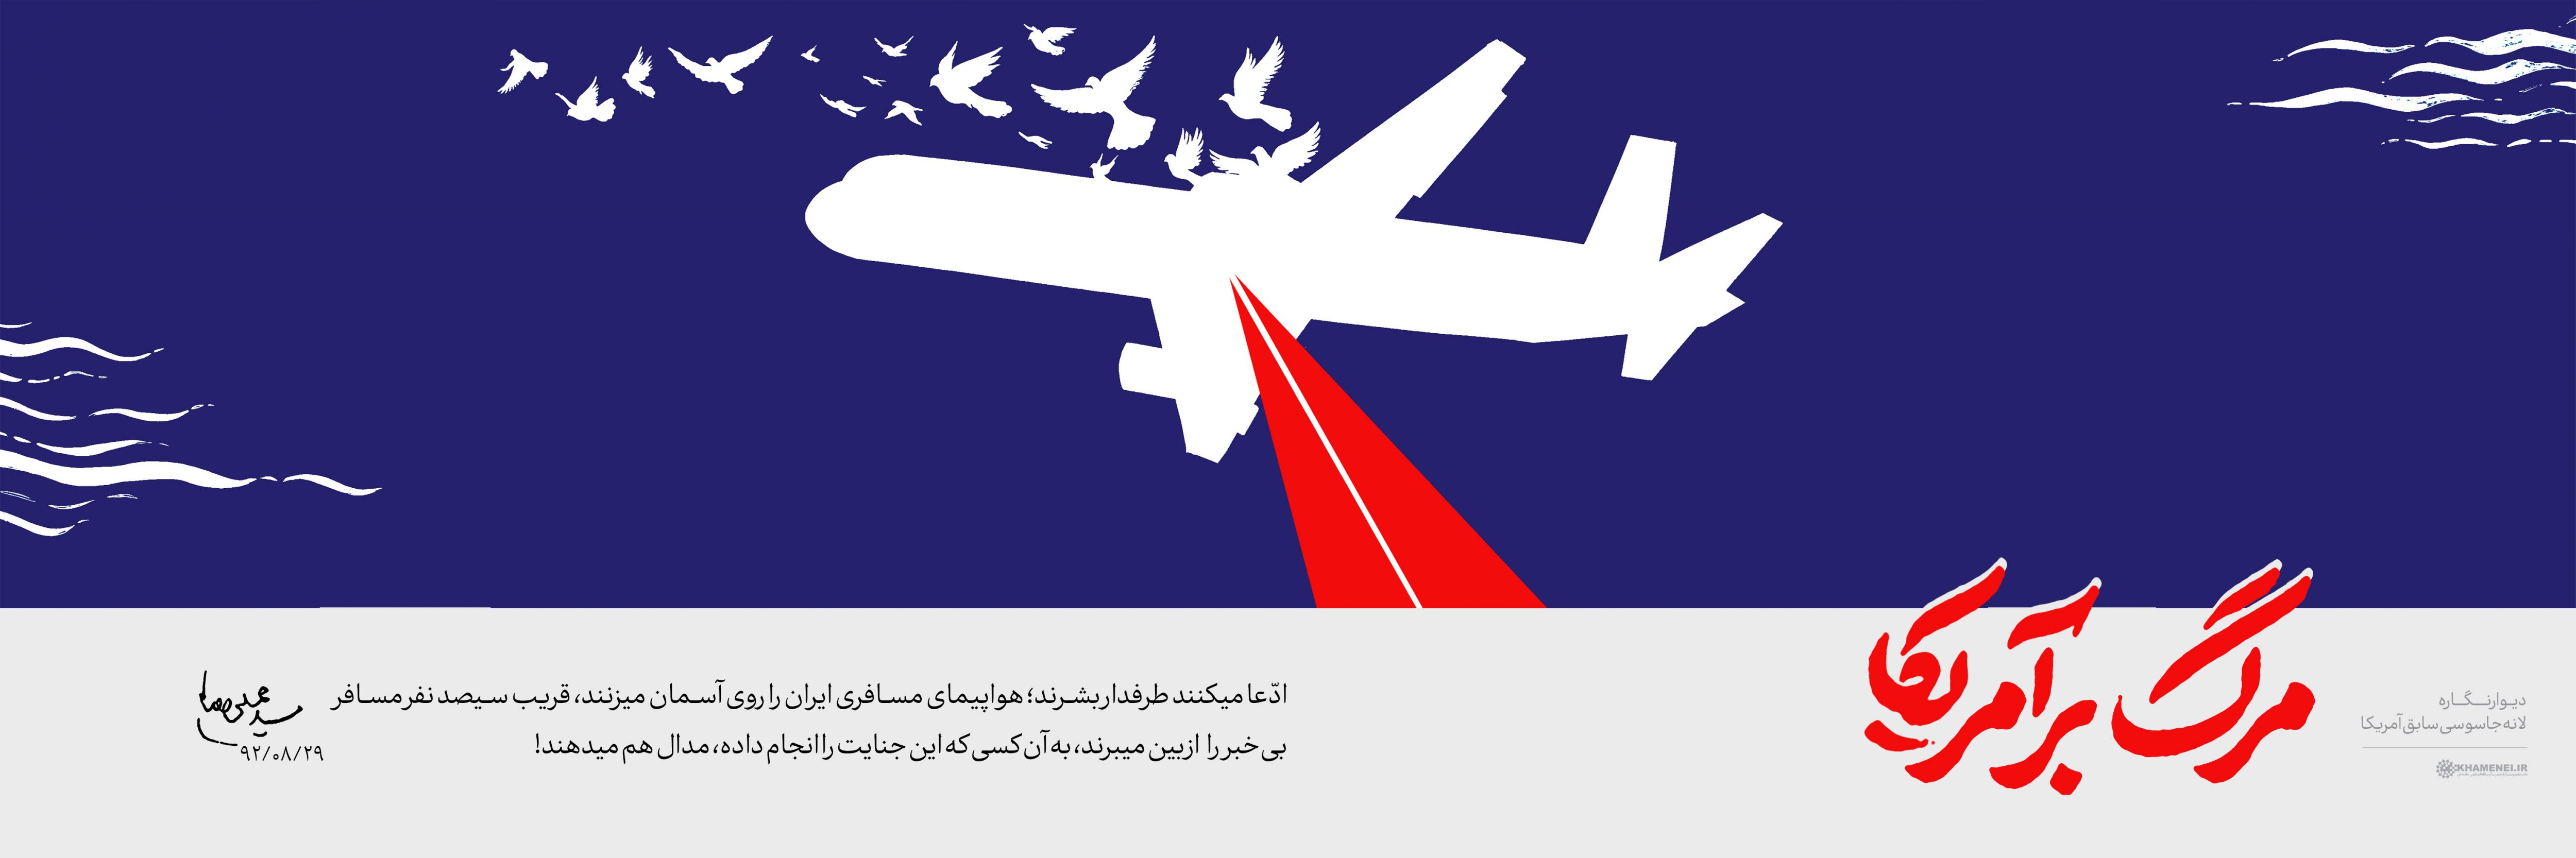 صوت تیکه سخنرانی جنجالی حسن عباسی در مورد ماجرای هواپیمای اوکراینی و حسن روحانی